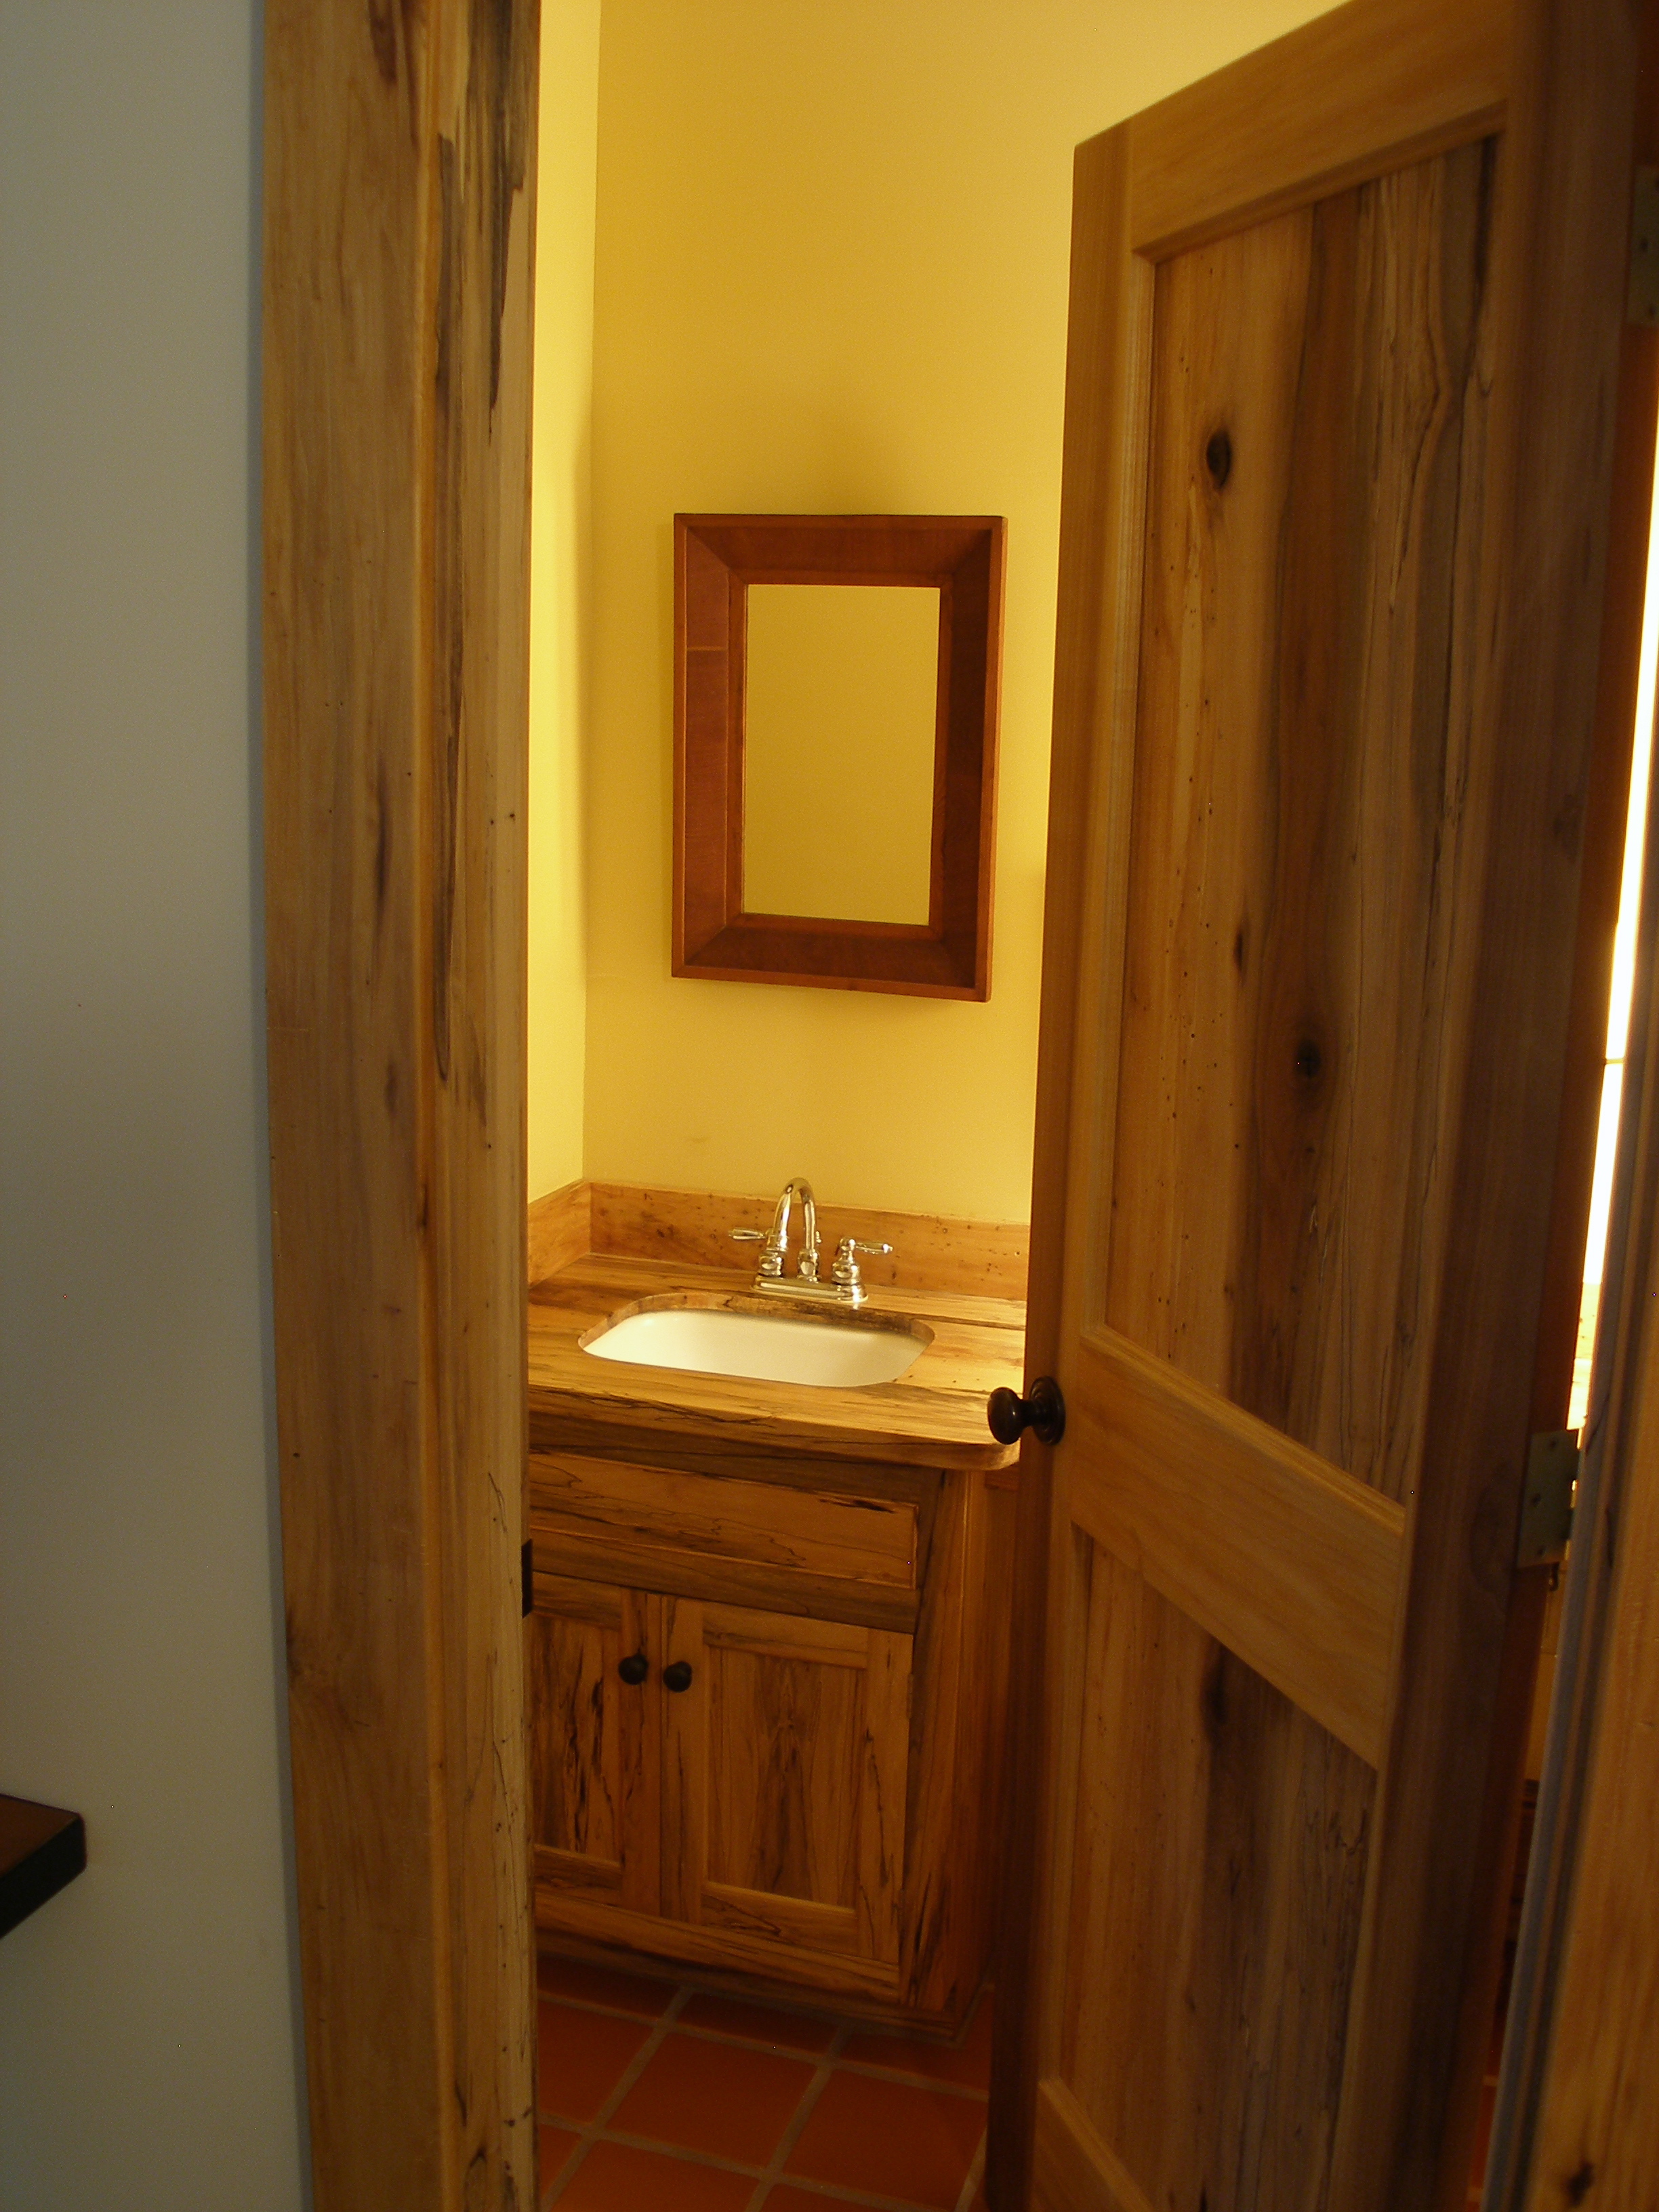 Spalted Poplar door and vanity cabinet in guest bath.